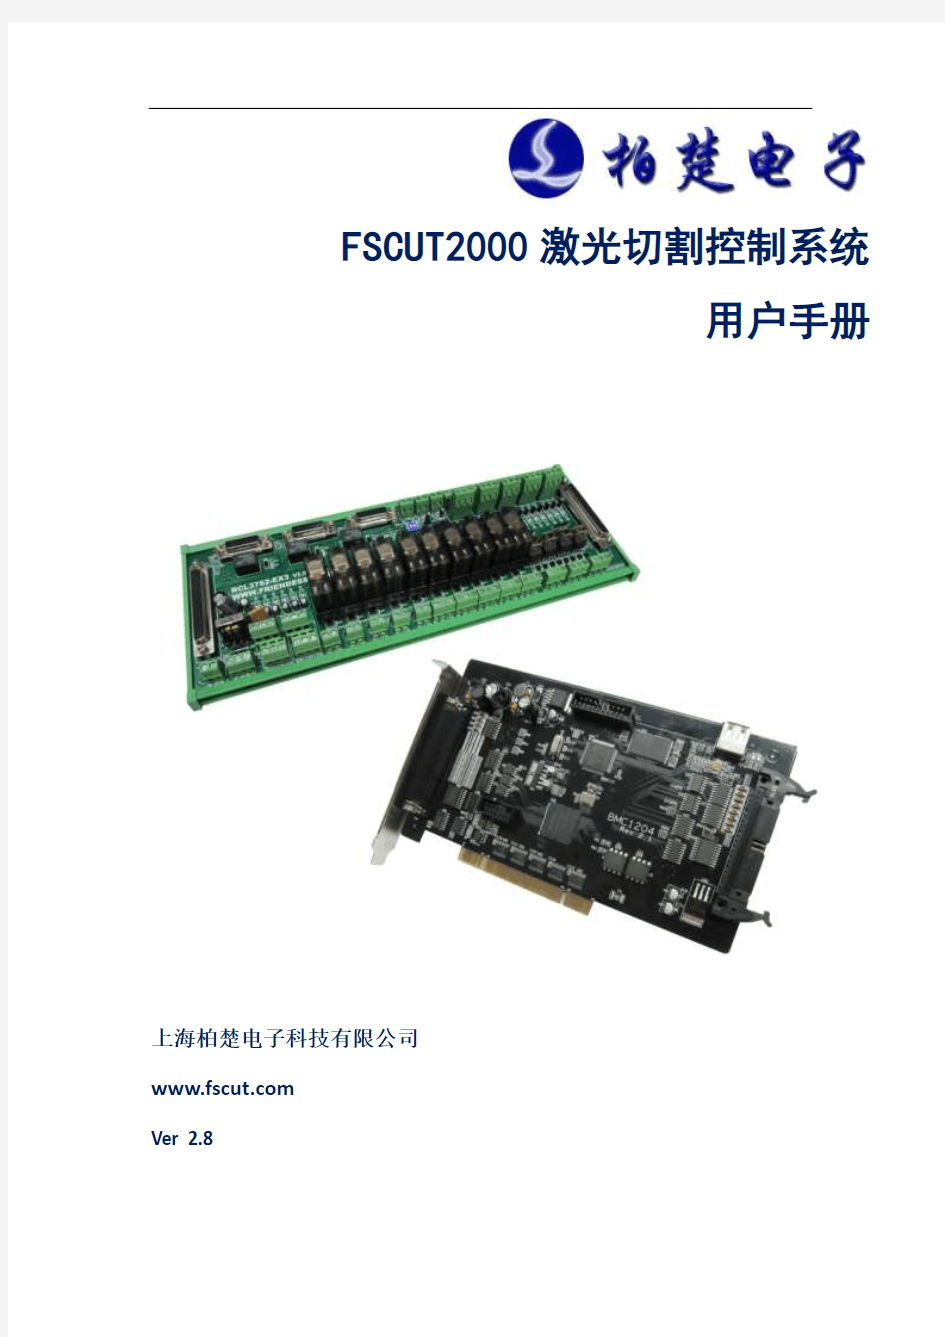 FSCUT2000激光切割控制系统用户手册V2.8